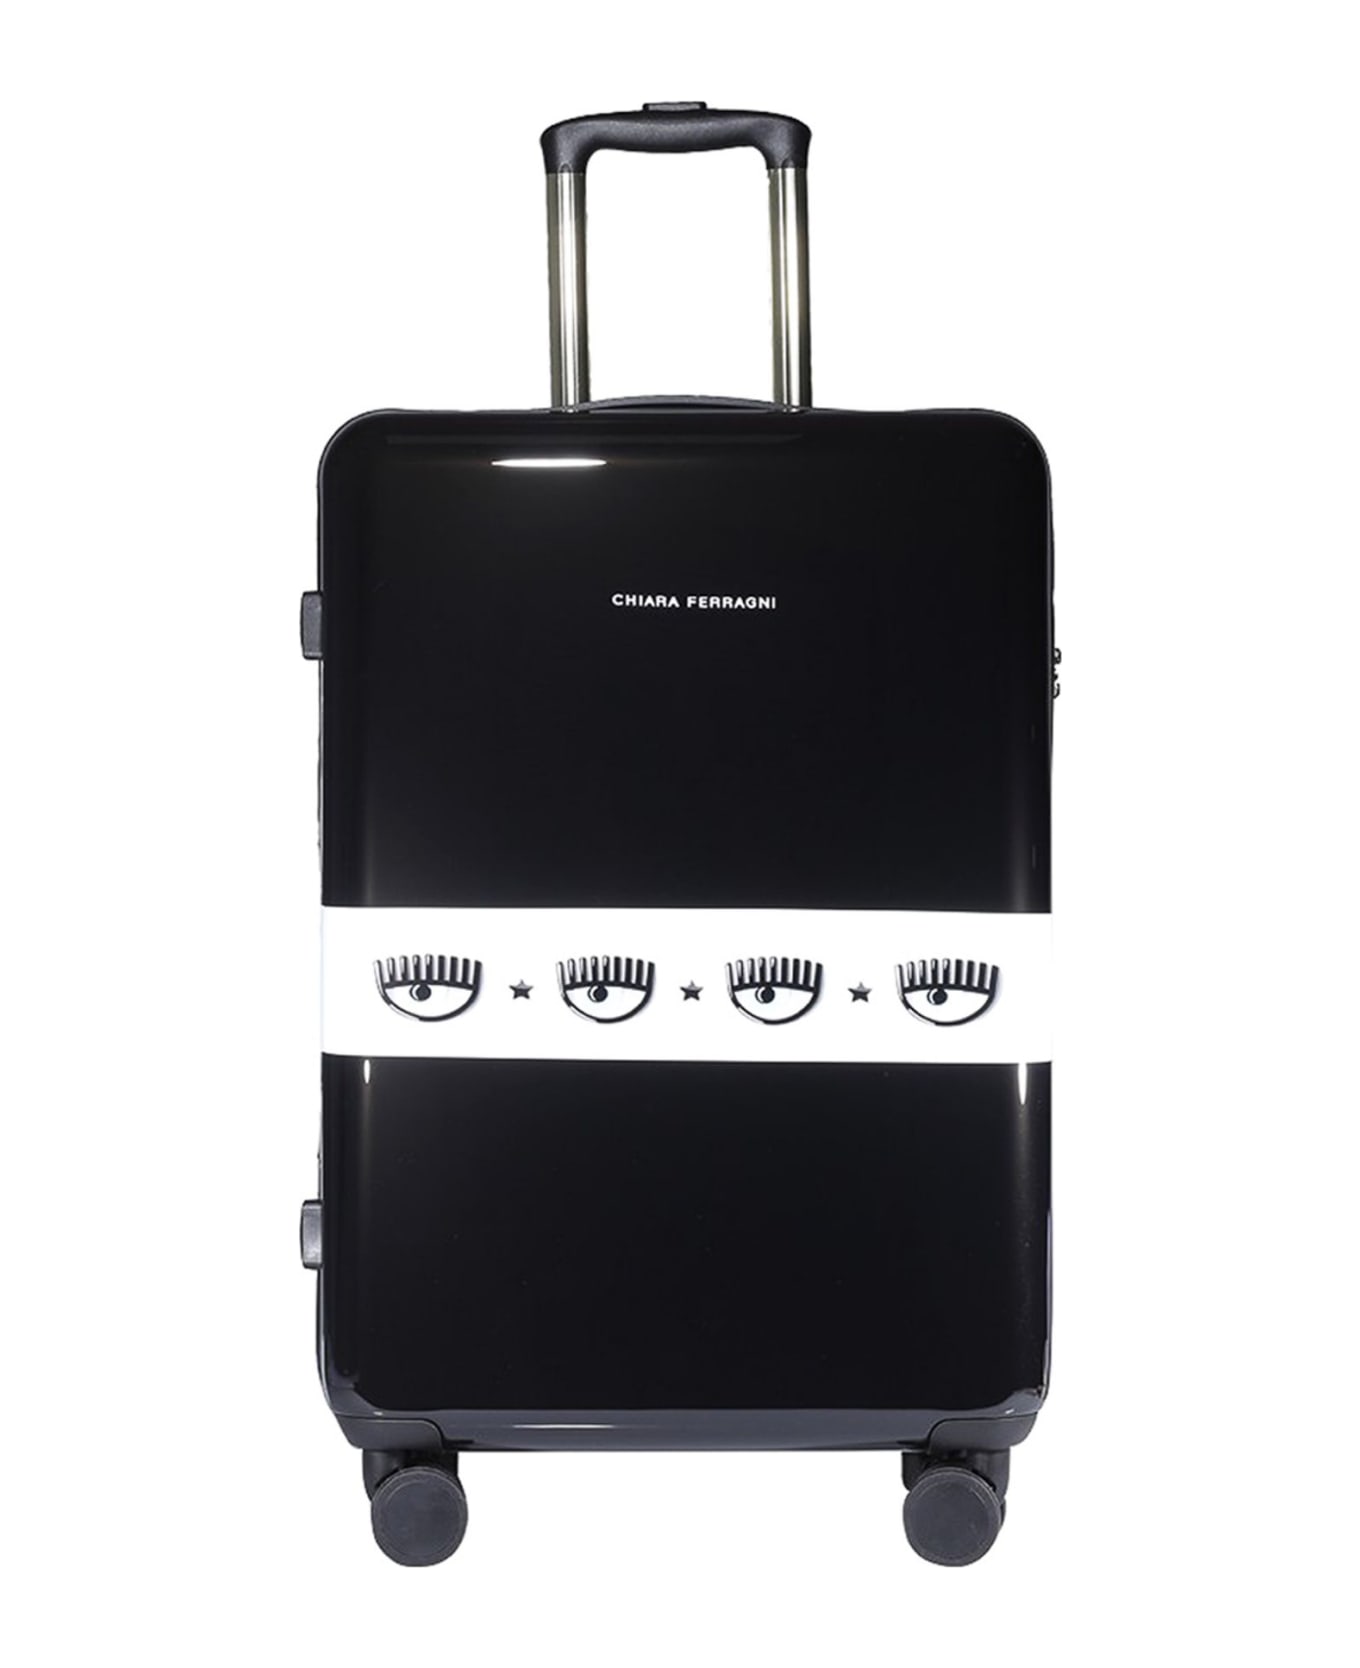 Chiara Ferragni Suitcases Black - Black